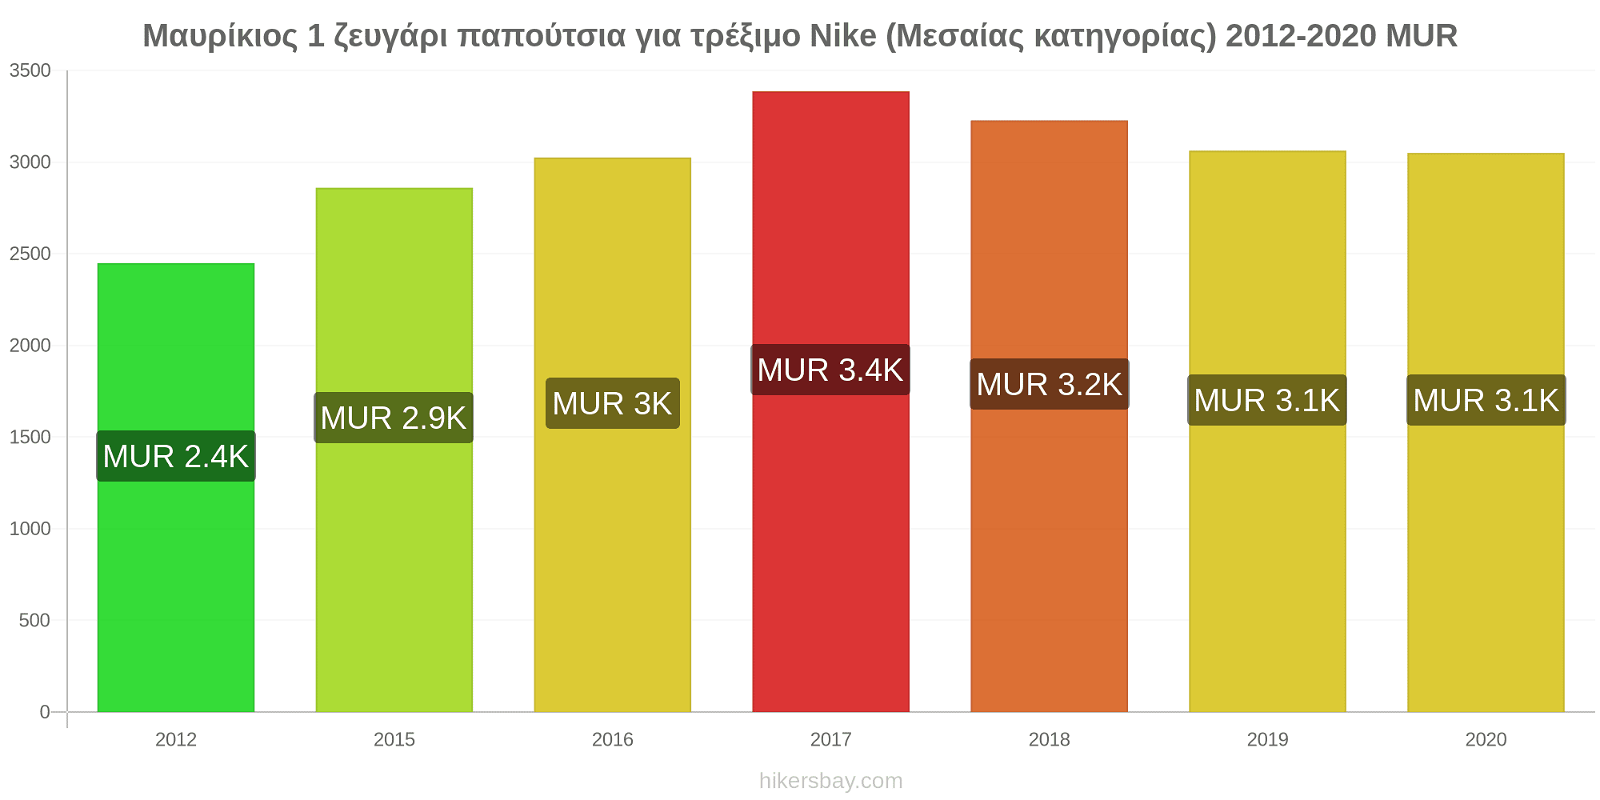 Μαυρίκιος αλλαγές τιμών 1 ζευγάρι παπούτσια για τρέξιμο Nike (Μεσαίας κατηγορίας) hikersbay.com